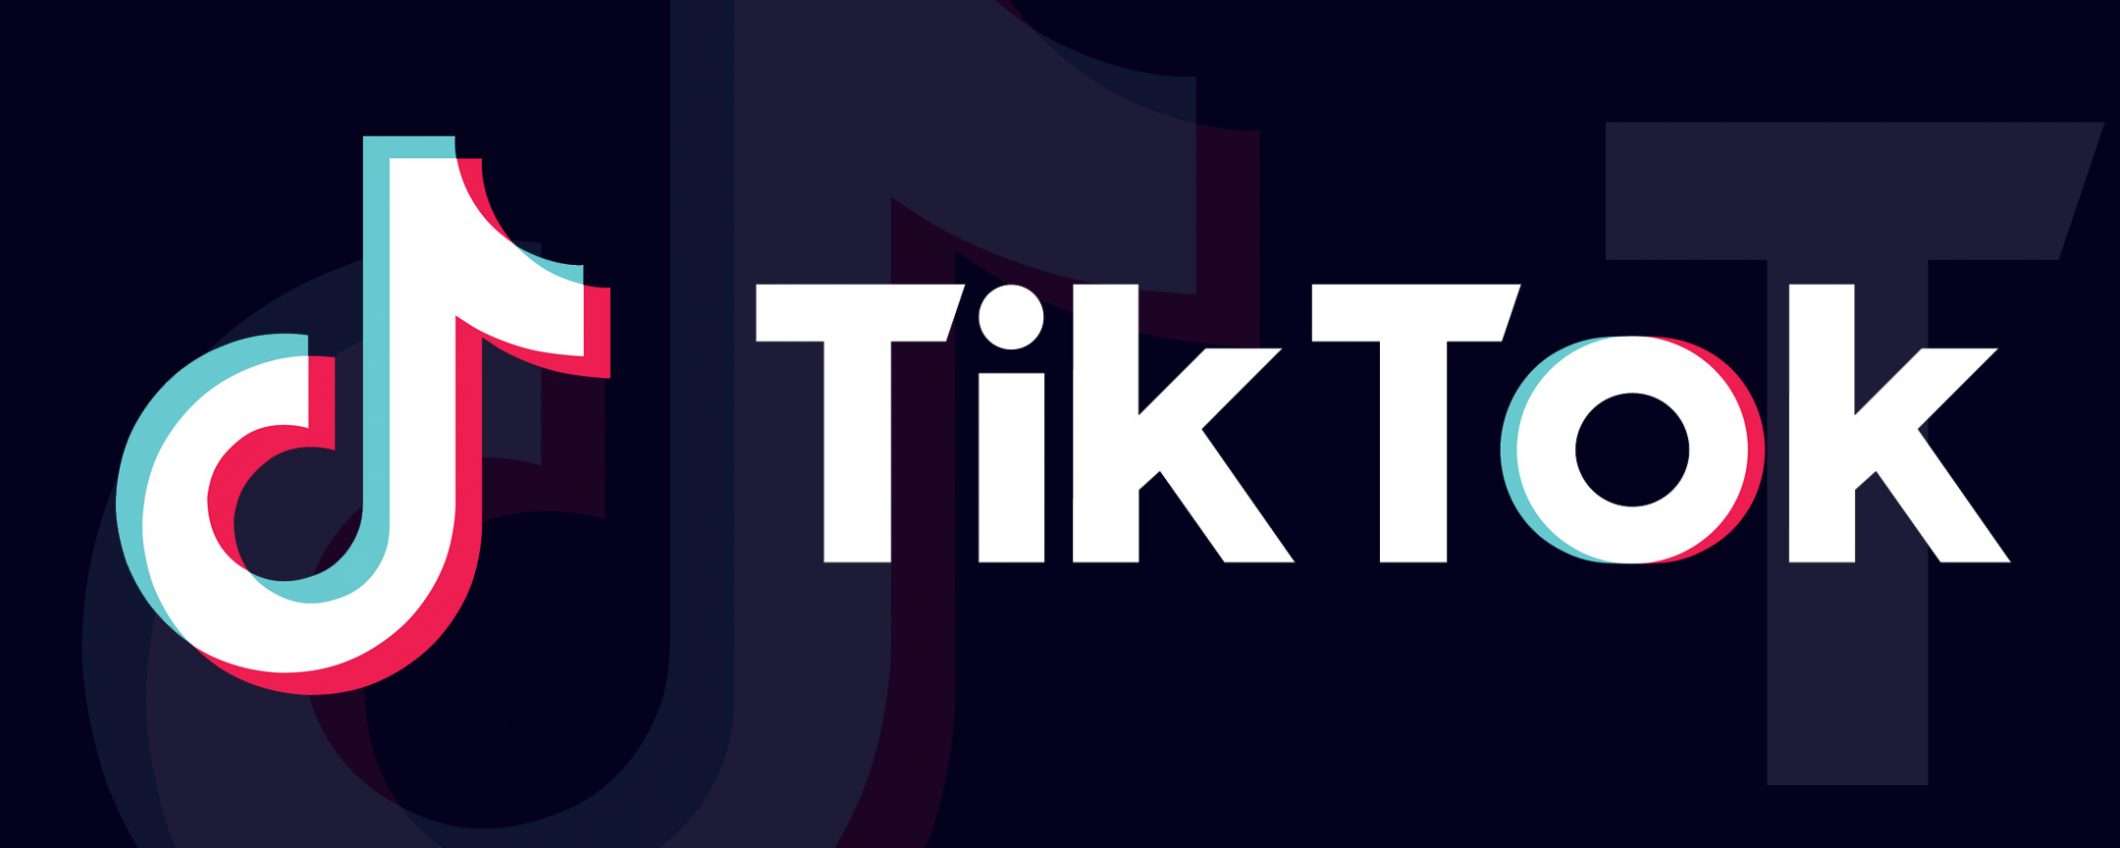 TikTok strizza l'occhio al mondo e-commerce